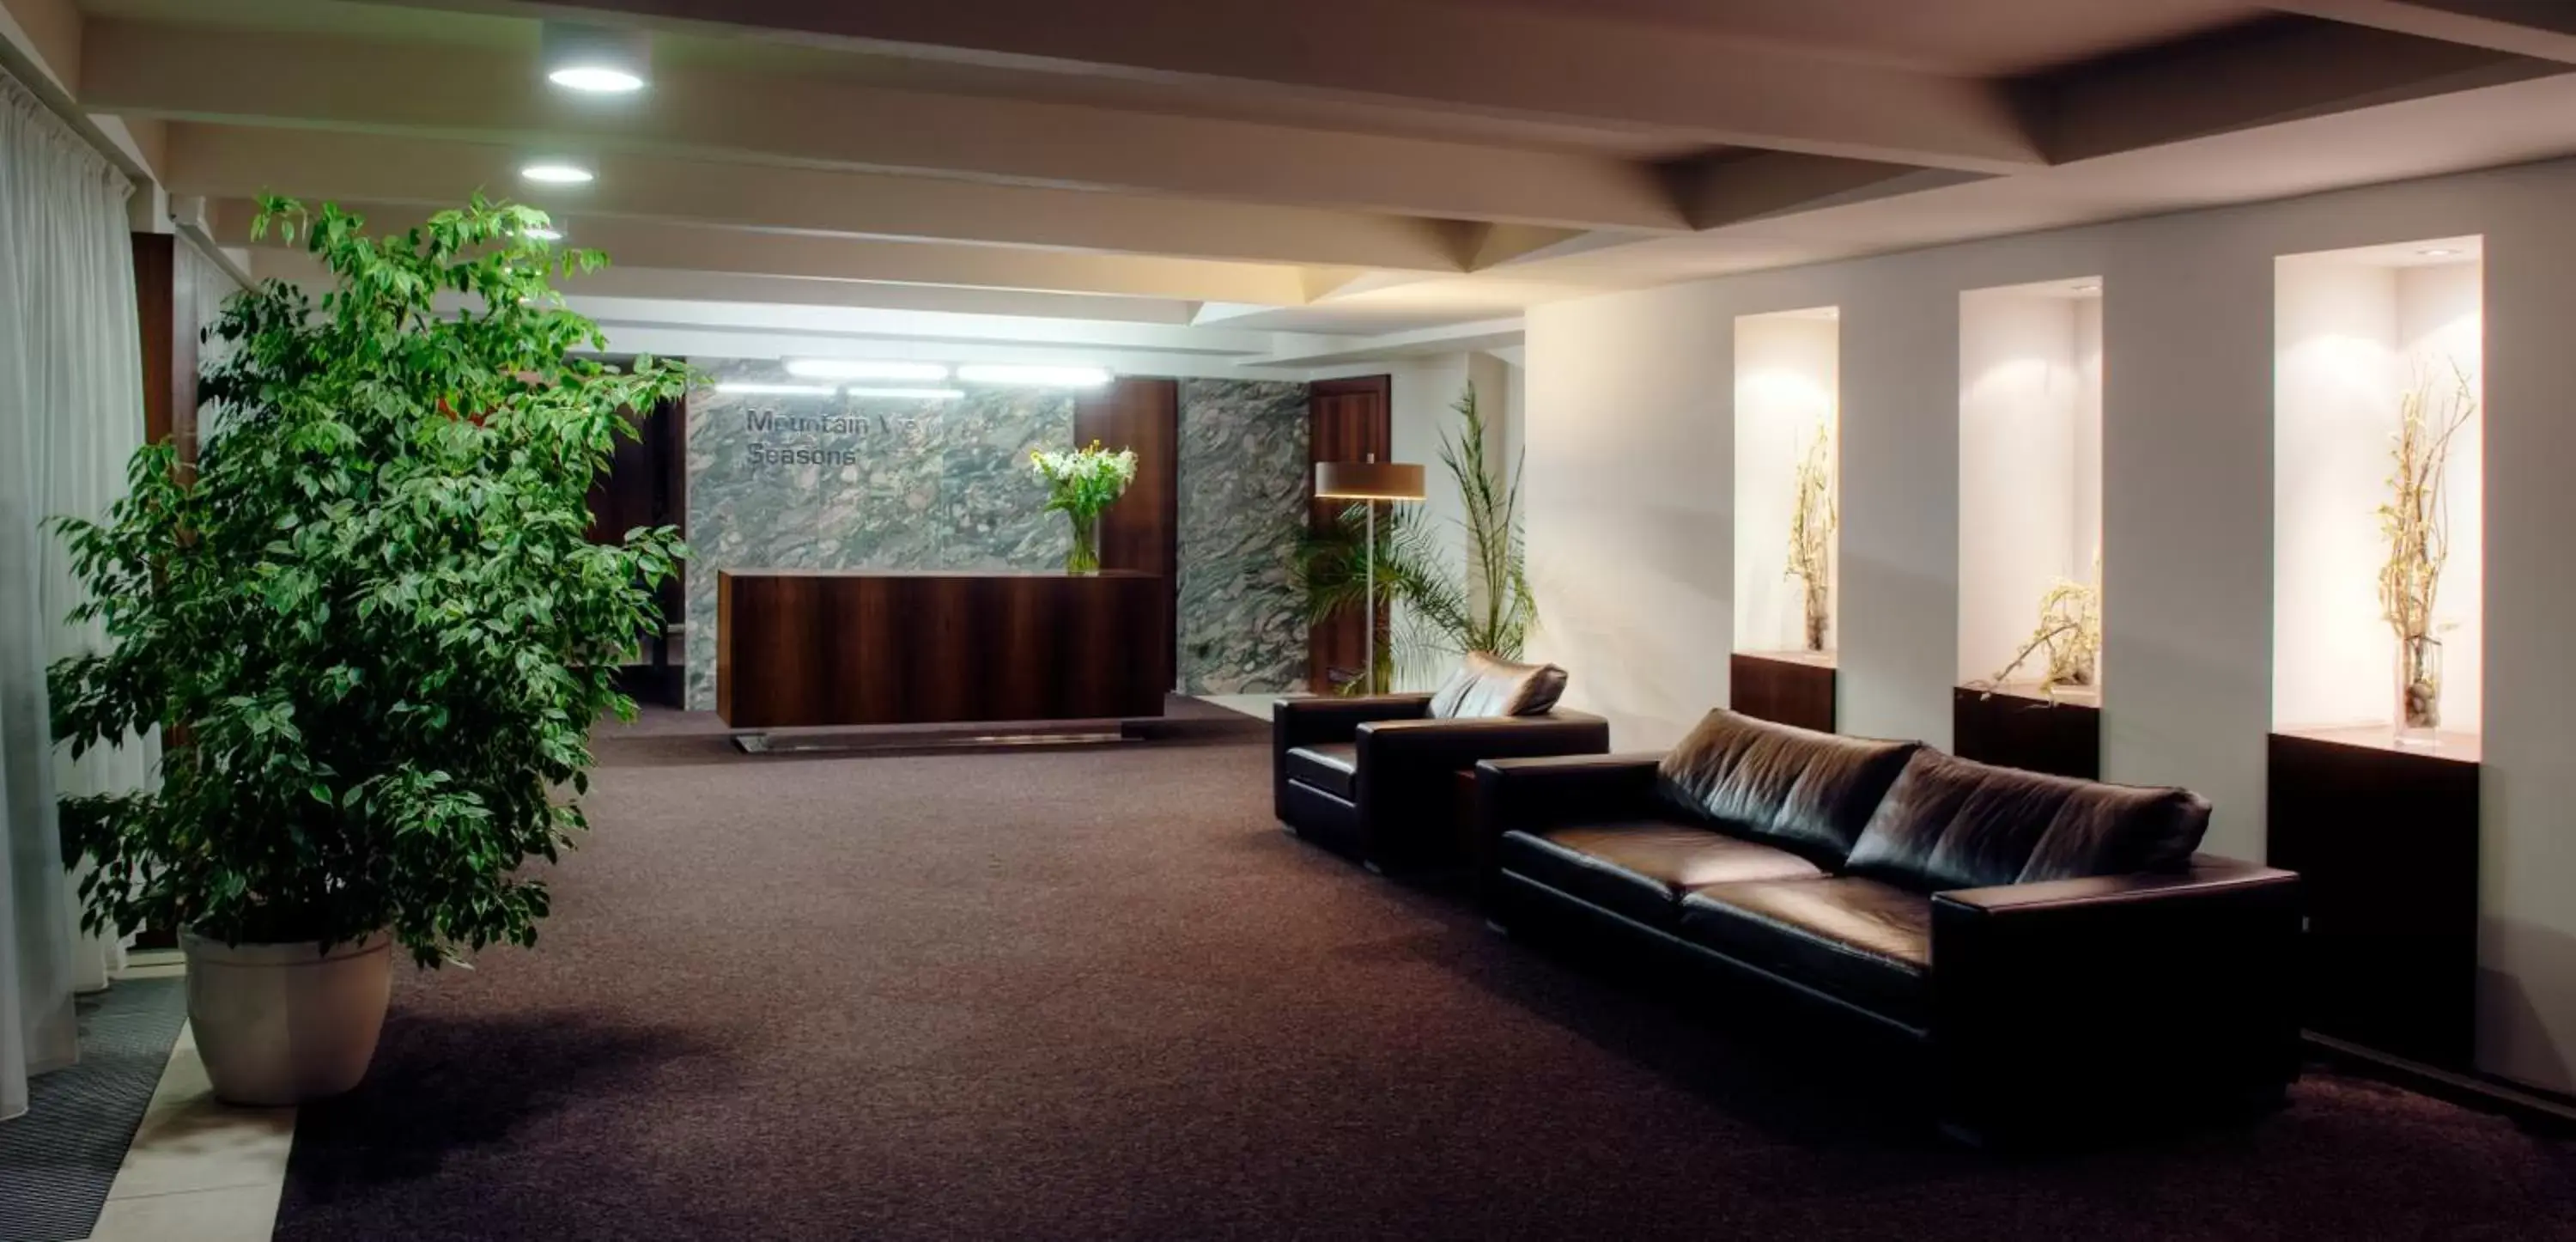 Area and facilities, Lobby/Reception in Hotel AquaCity Seasons